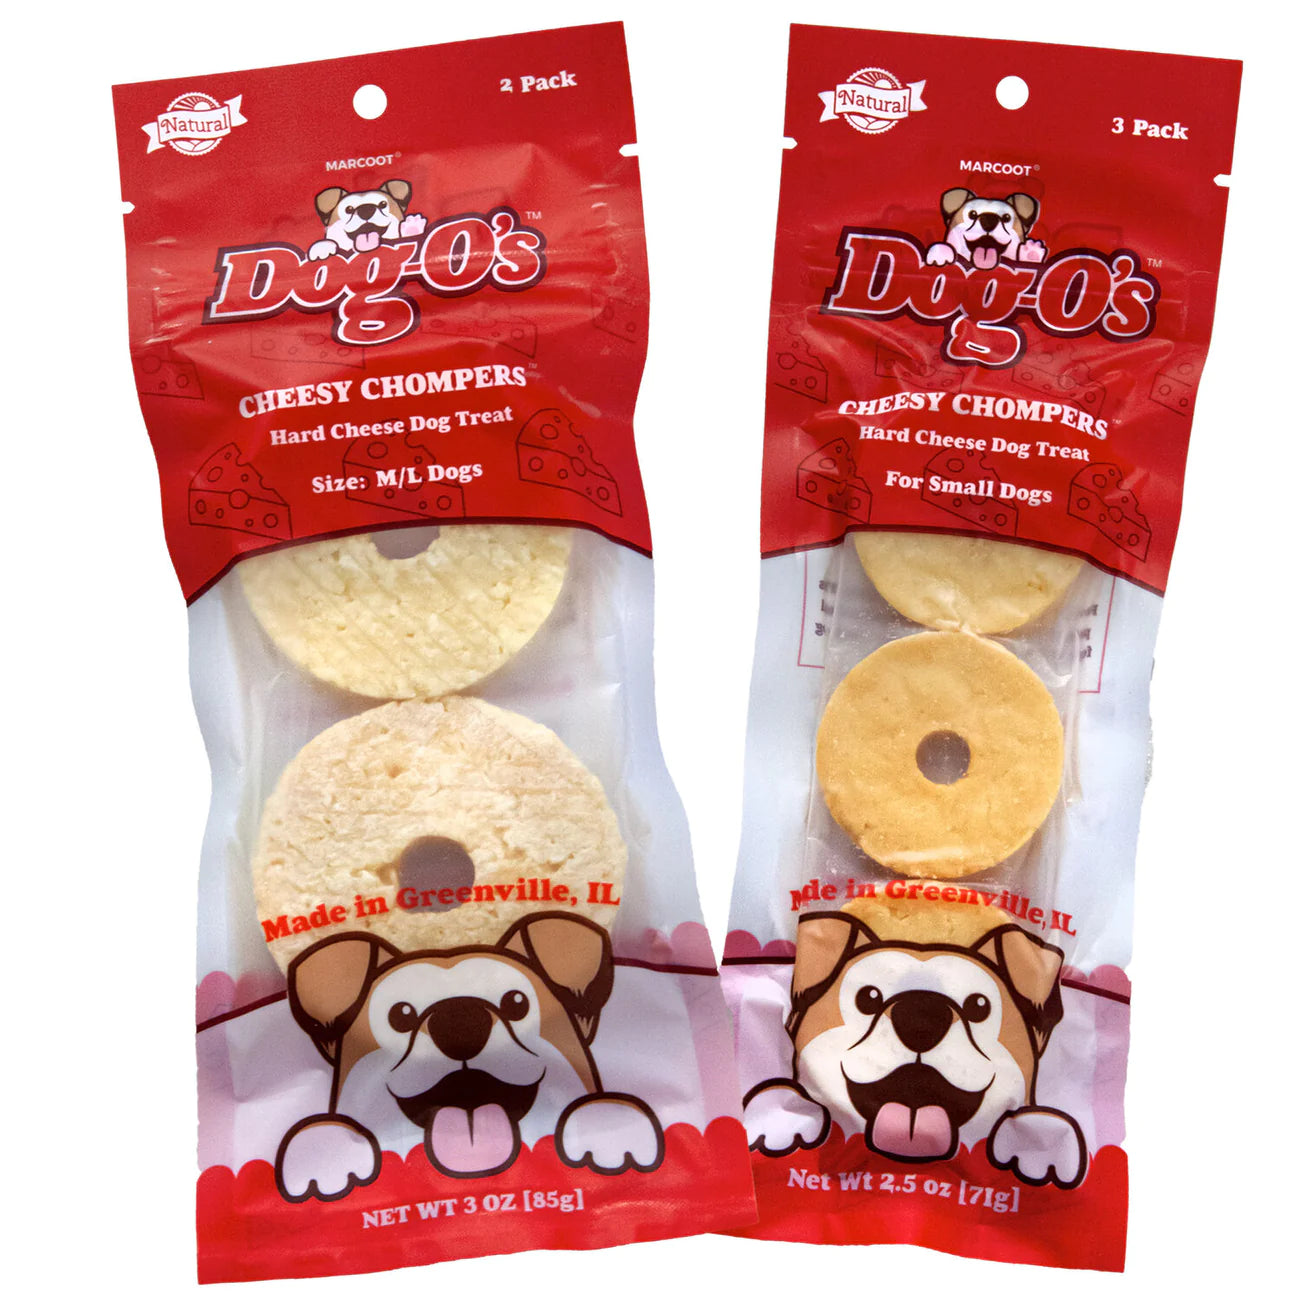 Dog-O's - Cheesy Chompers Dog Treats